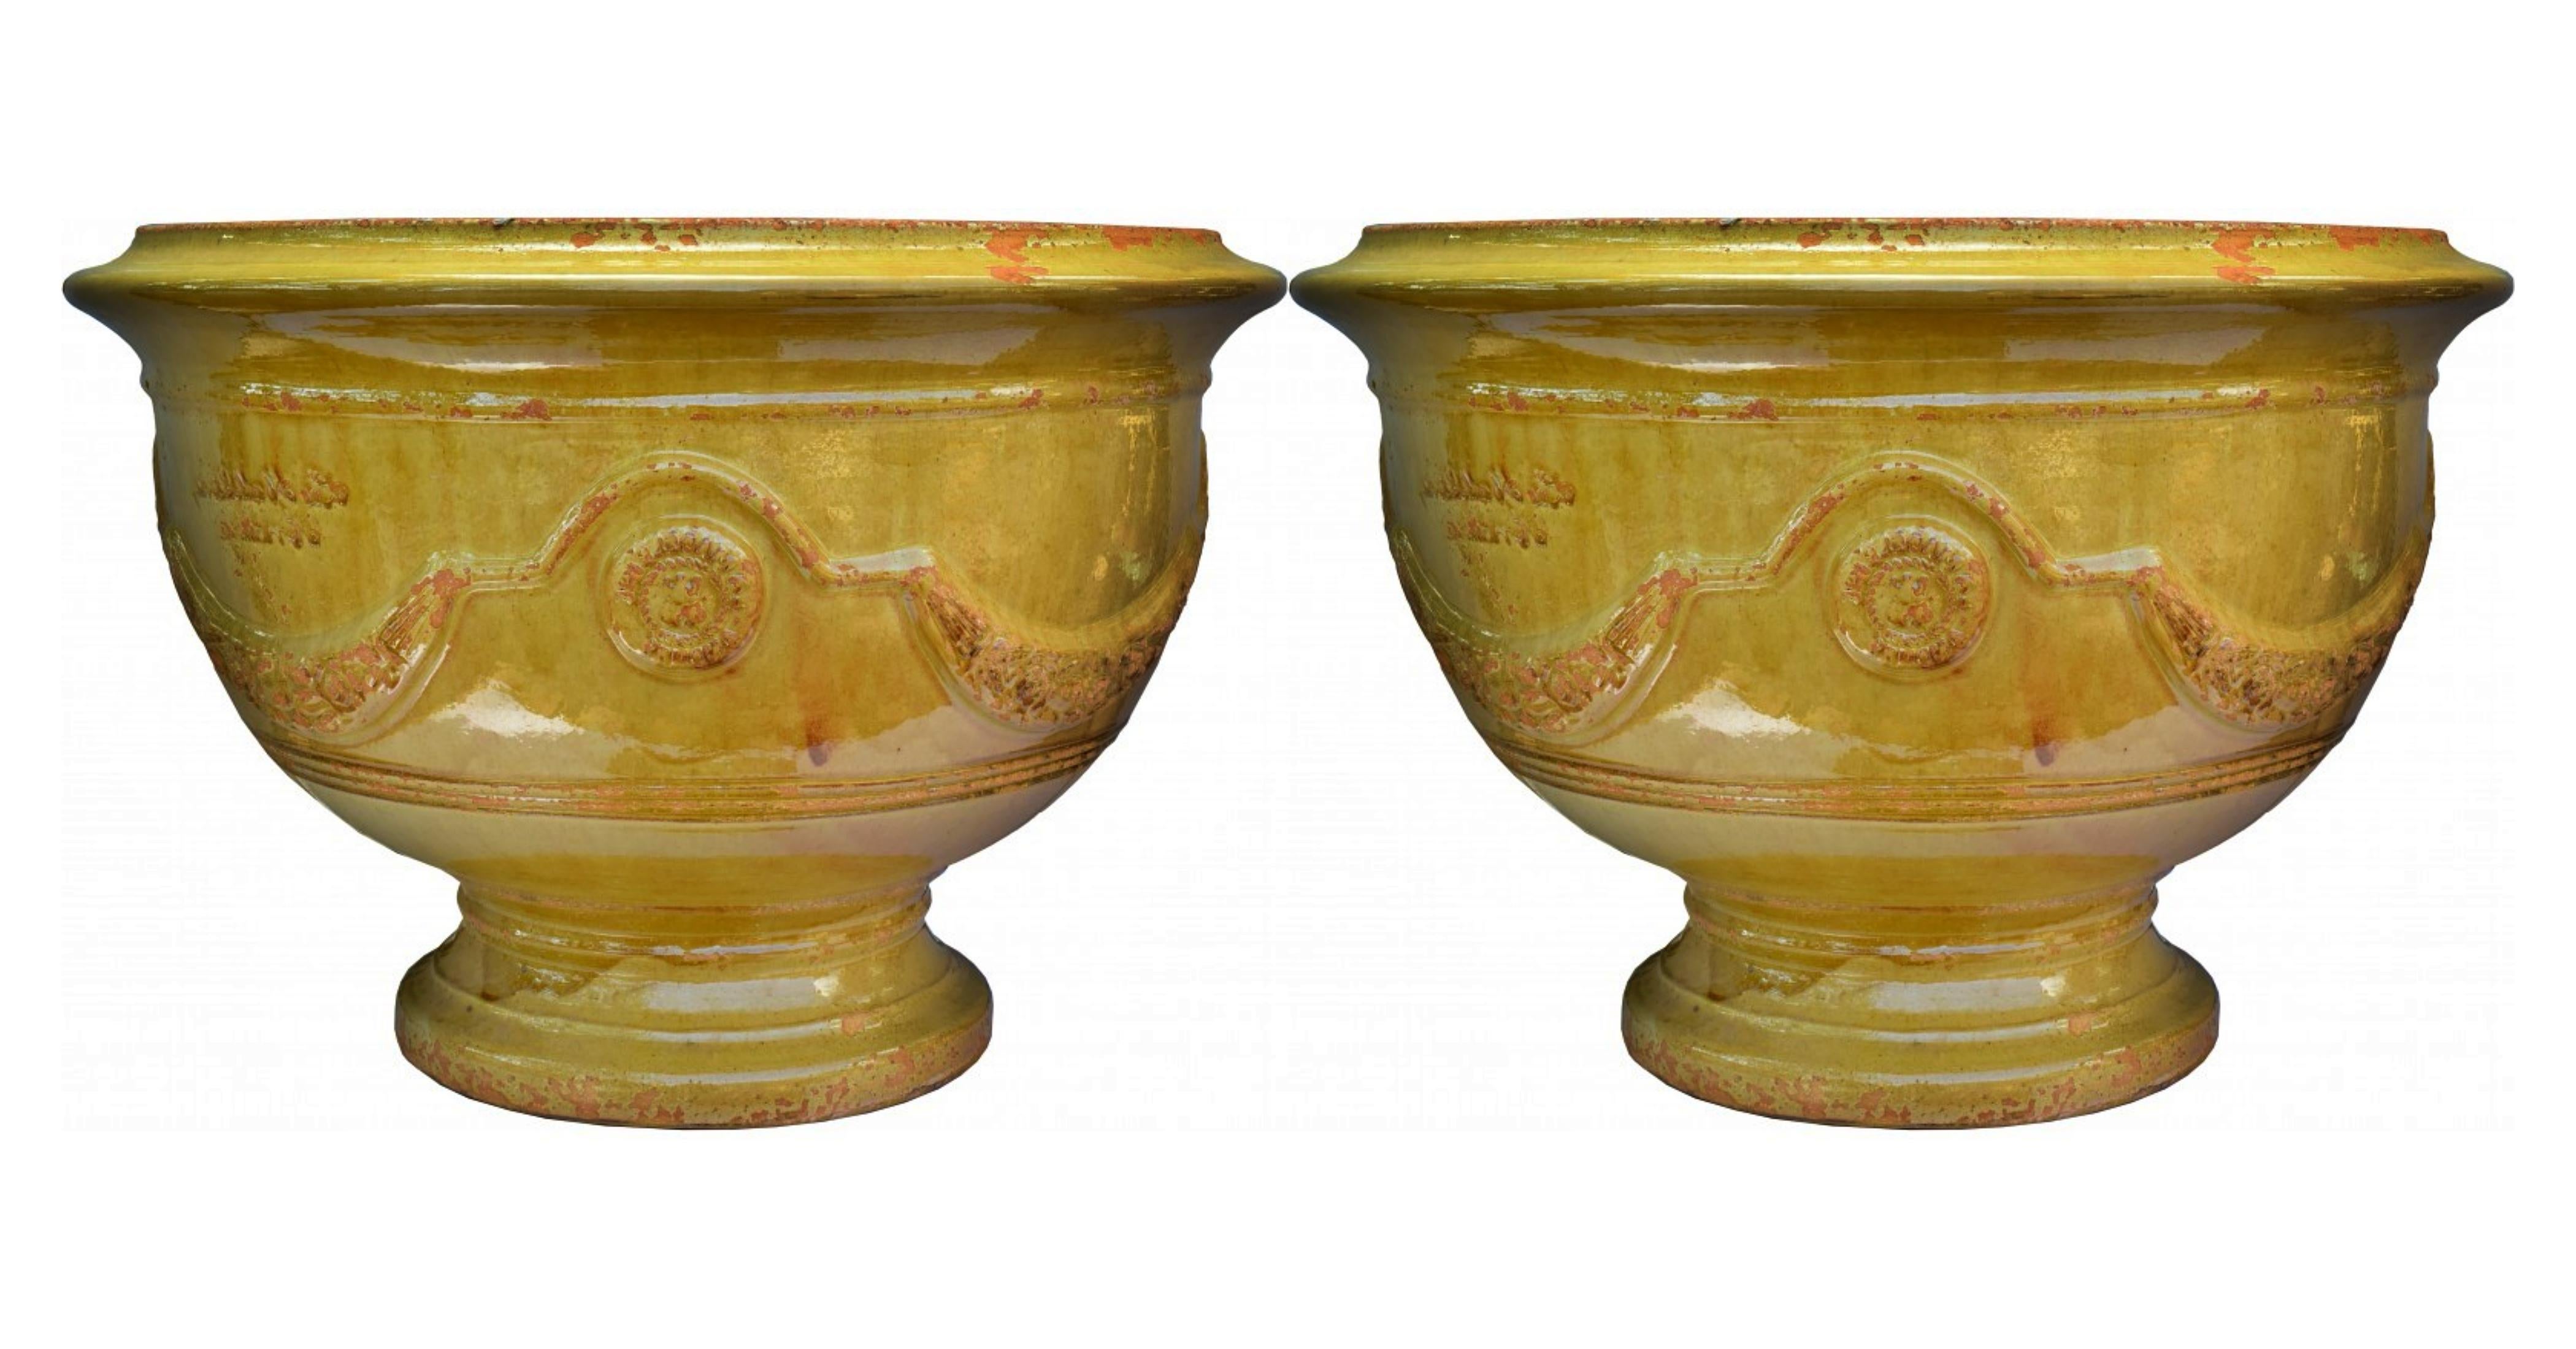 Paire de vases en majolique des Cévennes (France) début 20ème siècle

Les pots d'Anduze sont une spécialité artisanale des Cévennes, région culturelle et chaîne de montagnes du centre-sud de la France, située au sud-est du Massif central. Il s'agit